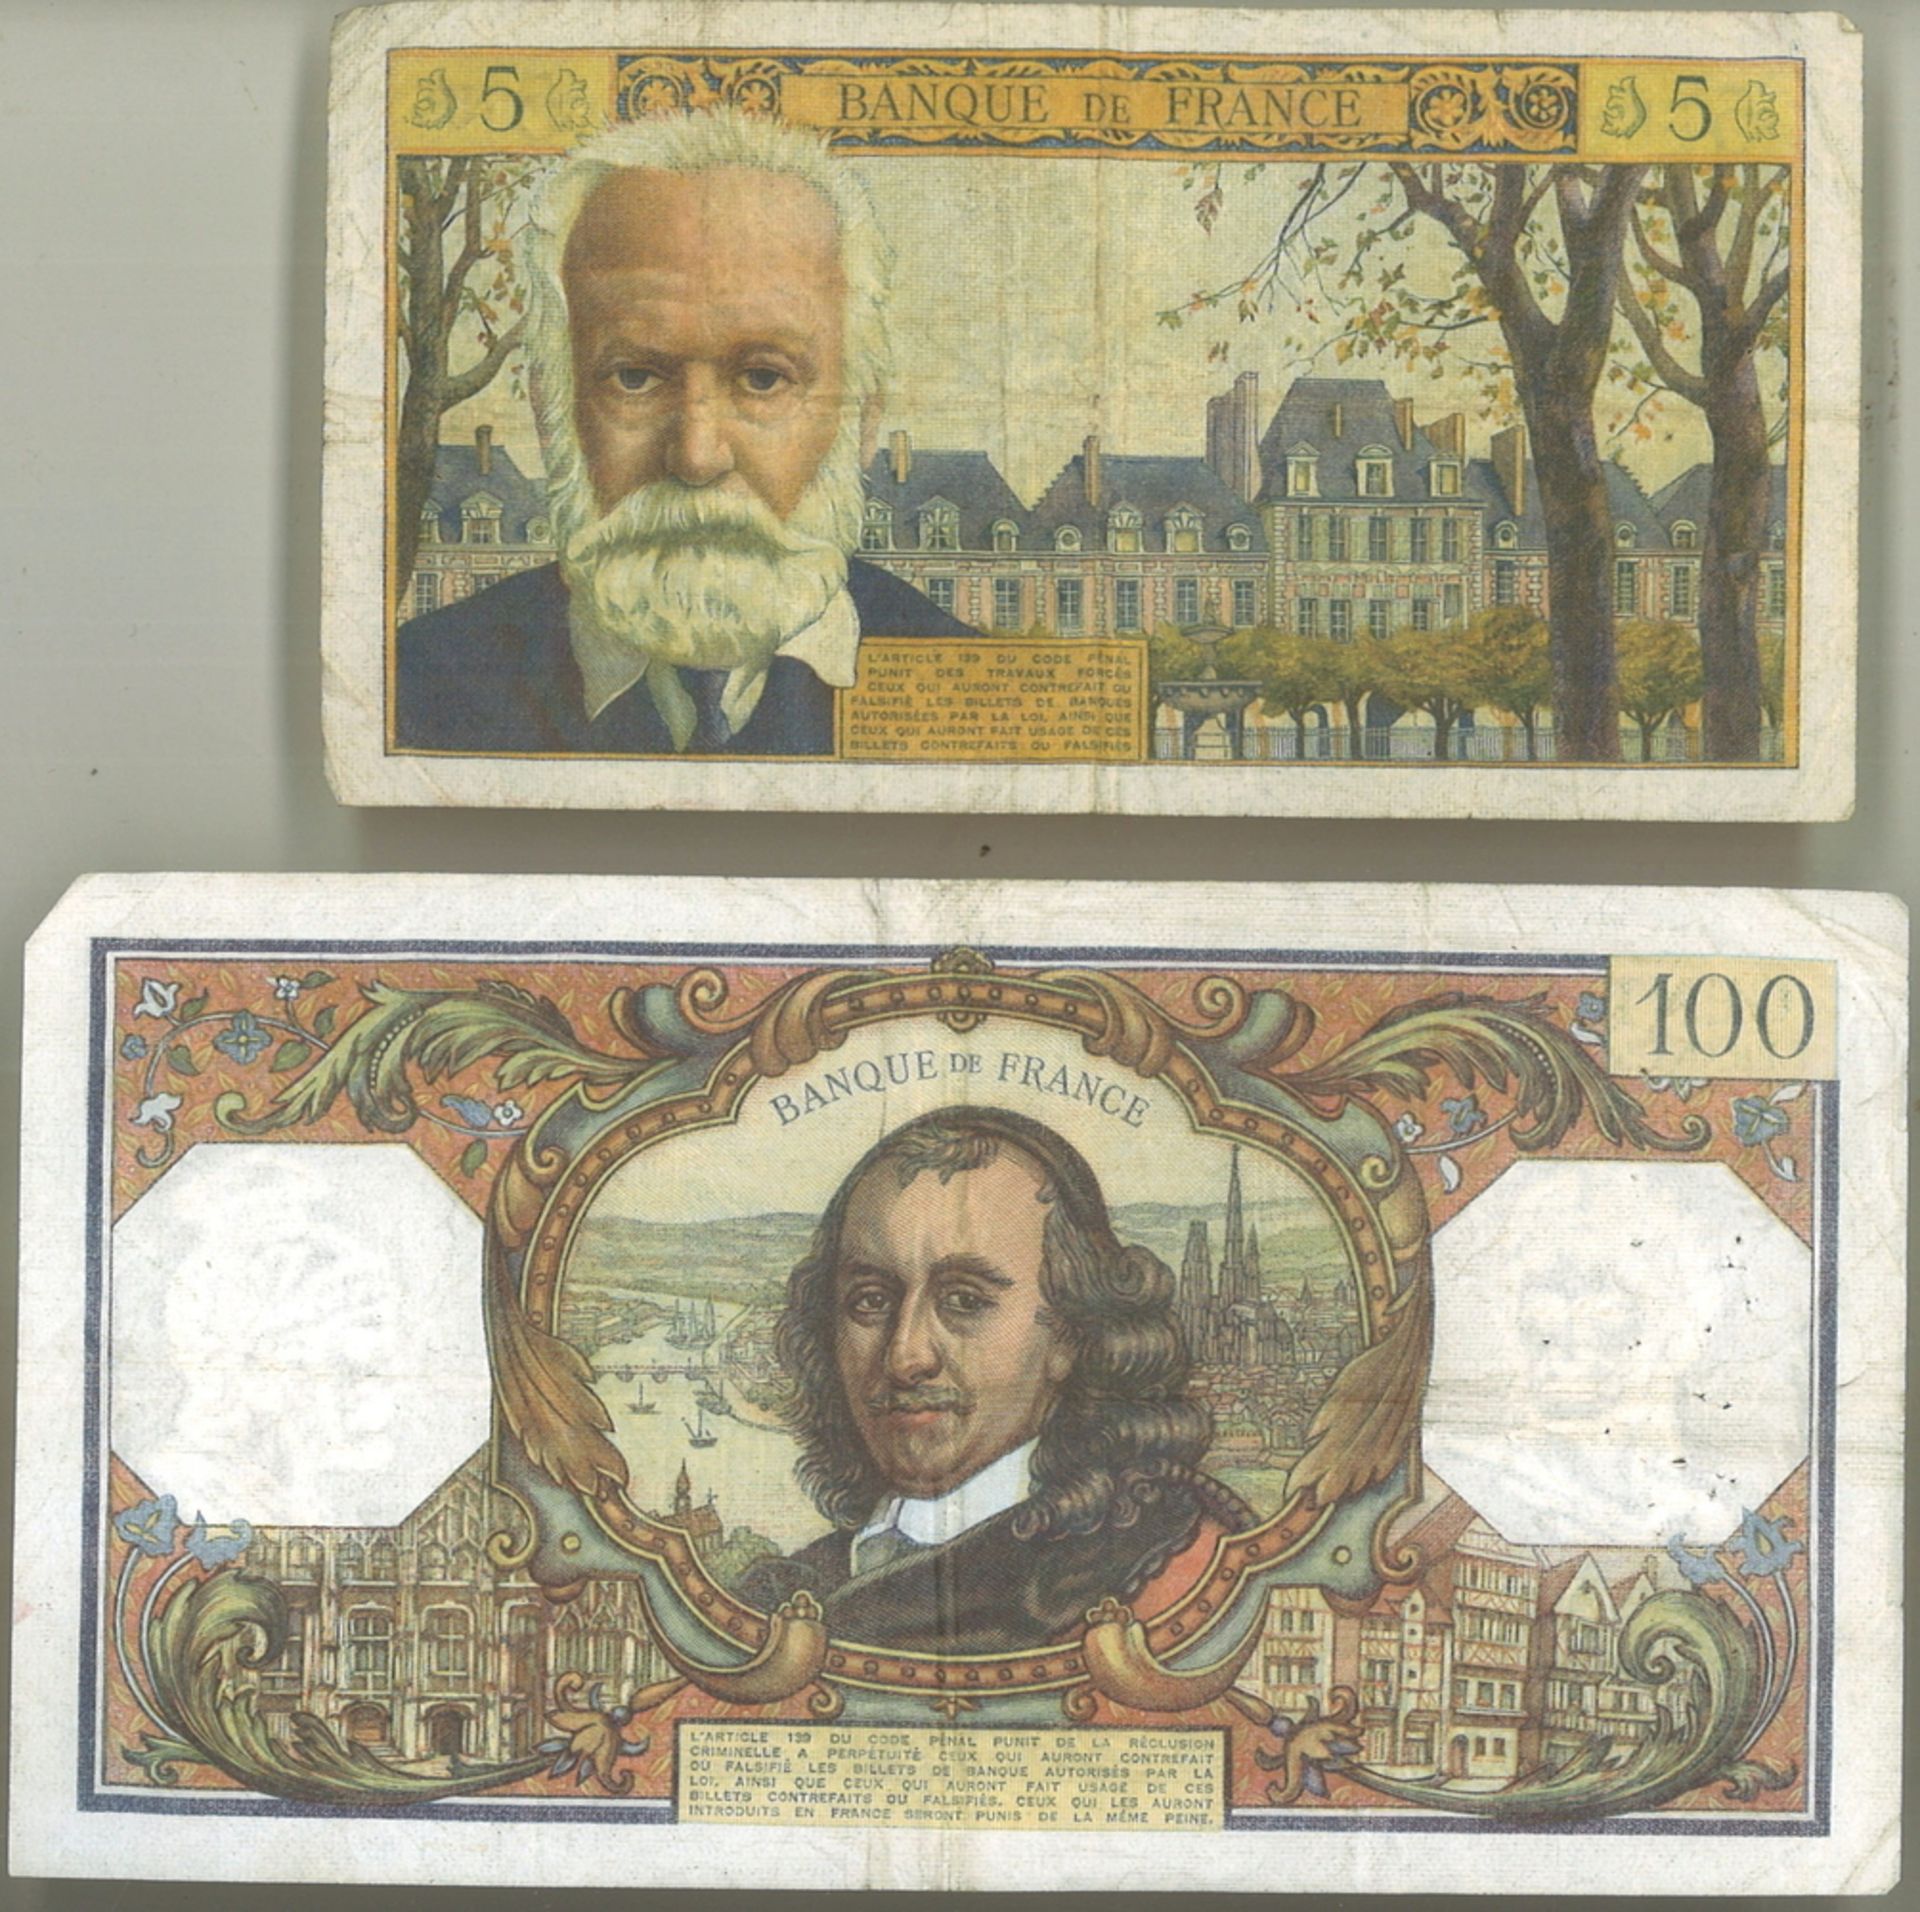 2 Banknoten Frankreich dabei 1 100 Francs Schein 1971 sowie 1 seltener 5 Francs Schein 1965. Beide - Bild 2 aus 2